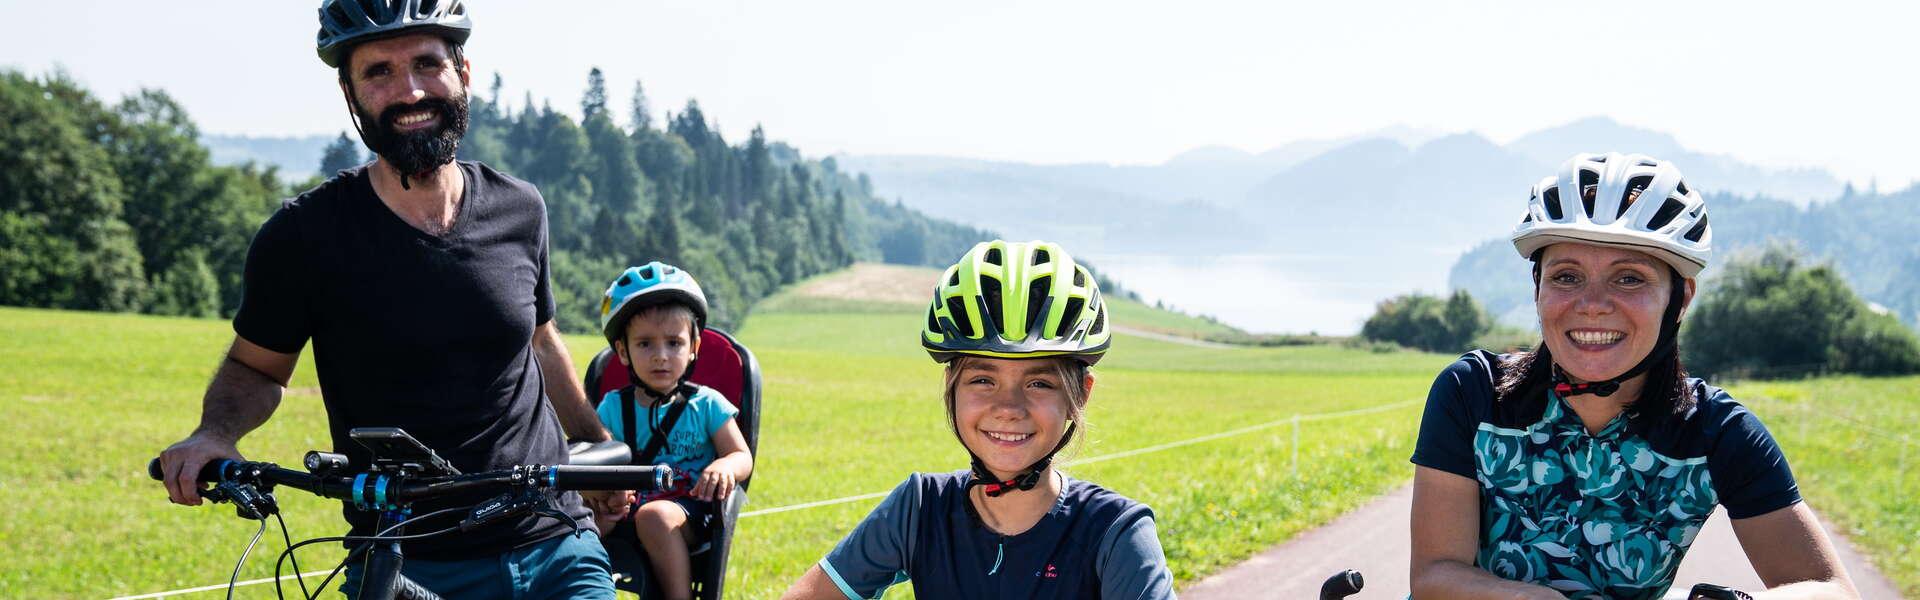 Bild: Mit einem Kind auf dem Fahrrad über Kleinpolen